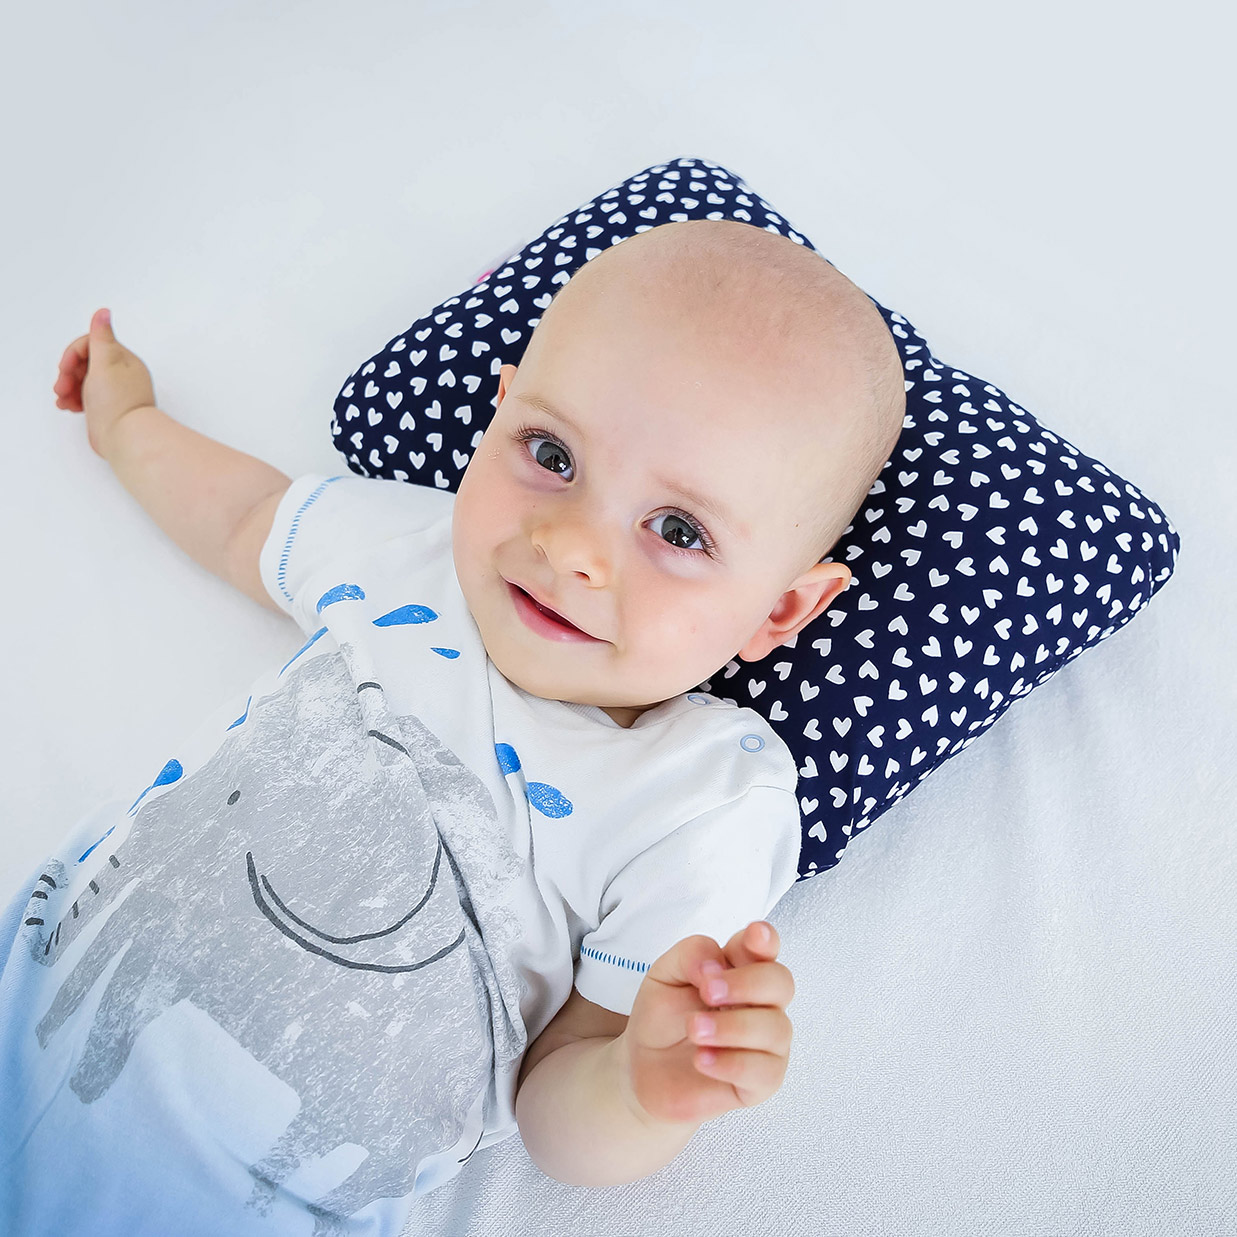 Baby protettiva Pillow Baby Head SHAPING morbido cuscino previene la plagiocefalia o sindrome della testa piatta Yellowcorrecting nanna posture coniglio cuscino giallo 